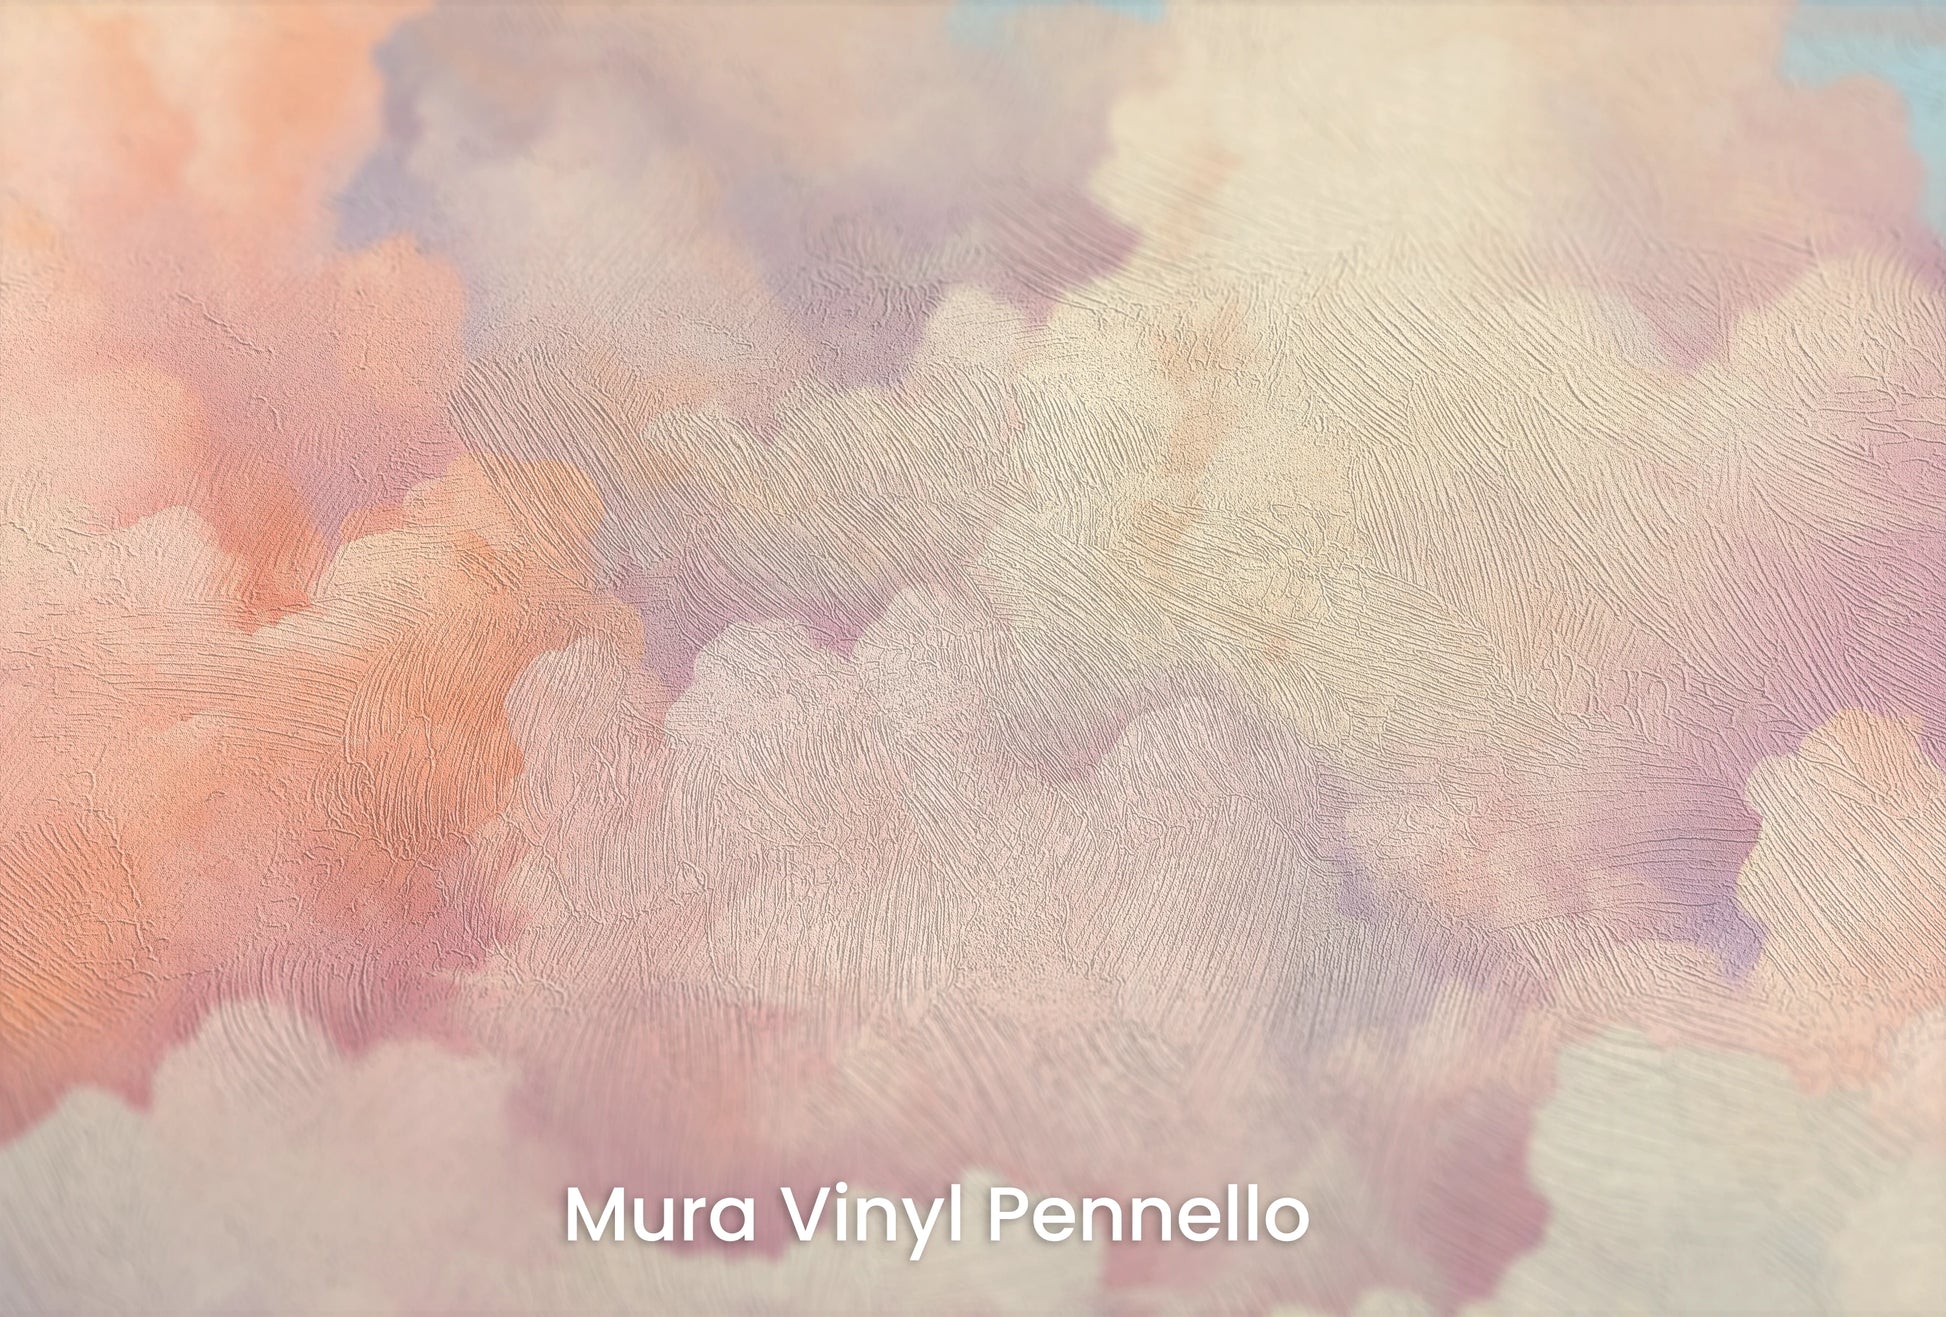 Zbliżenie na artystyczną fototapetę o nazwie Cotton Candy Skies na podłożu Mura Vinyl Pennello - faktura pociągnięć pędzla malarskiego.